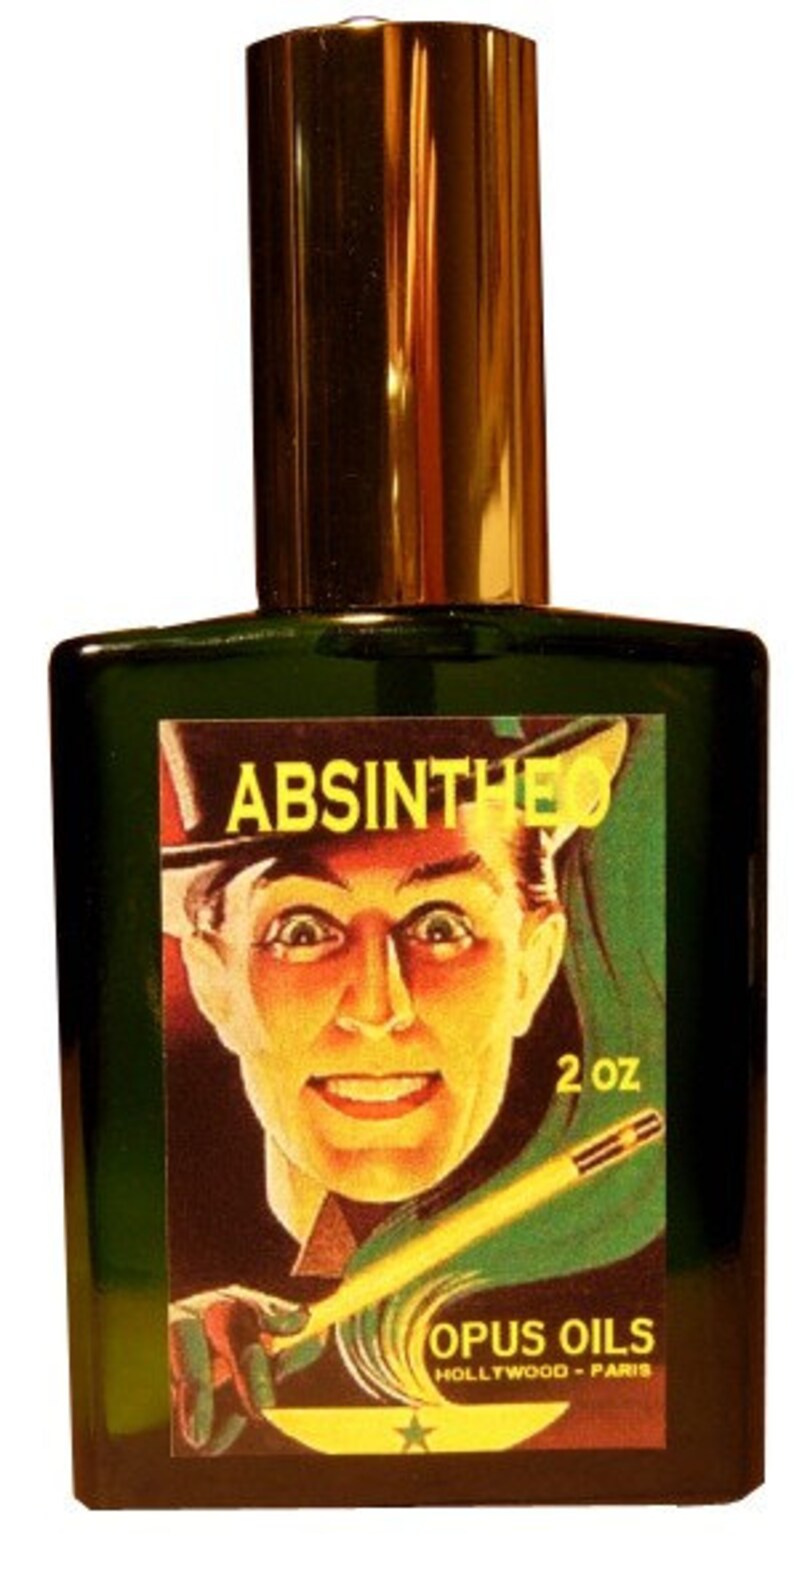 ABSINTHEO Absinthe, Fig, Sandalwood 1 Dram LTD Edition Mini Perfume image 4